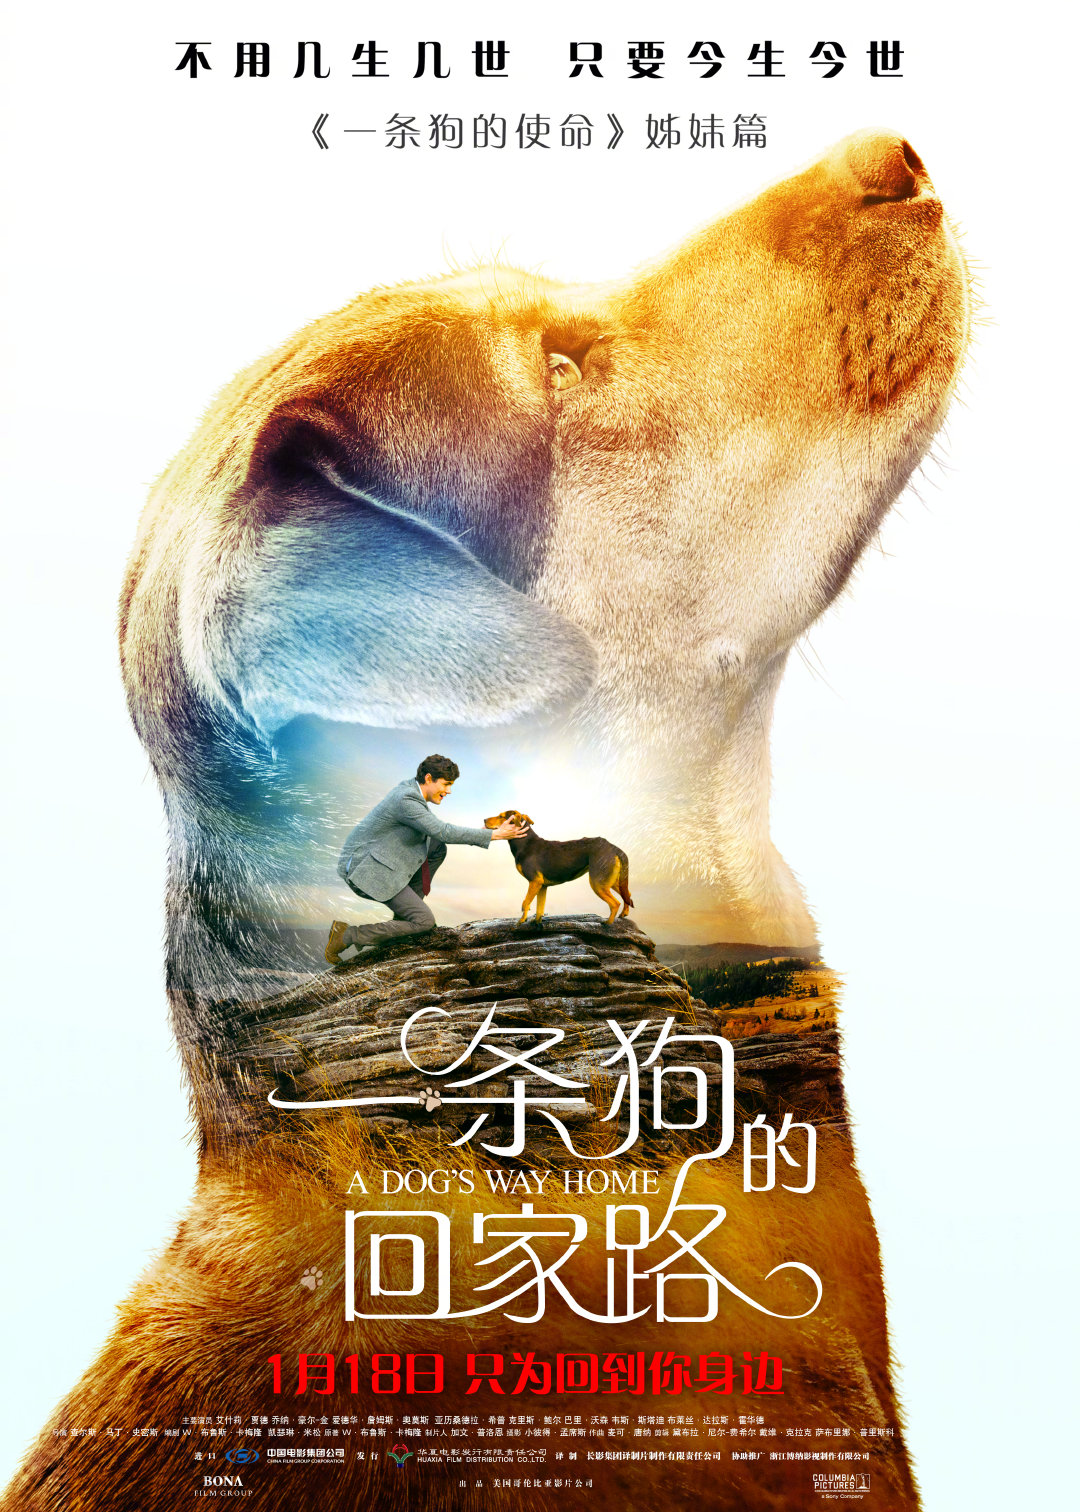 《一条狗的回家路》曝“猫狗”海报 北美开画票房力超前作姊妹篇